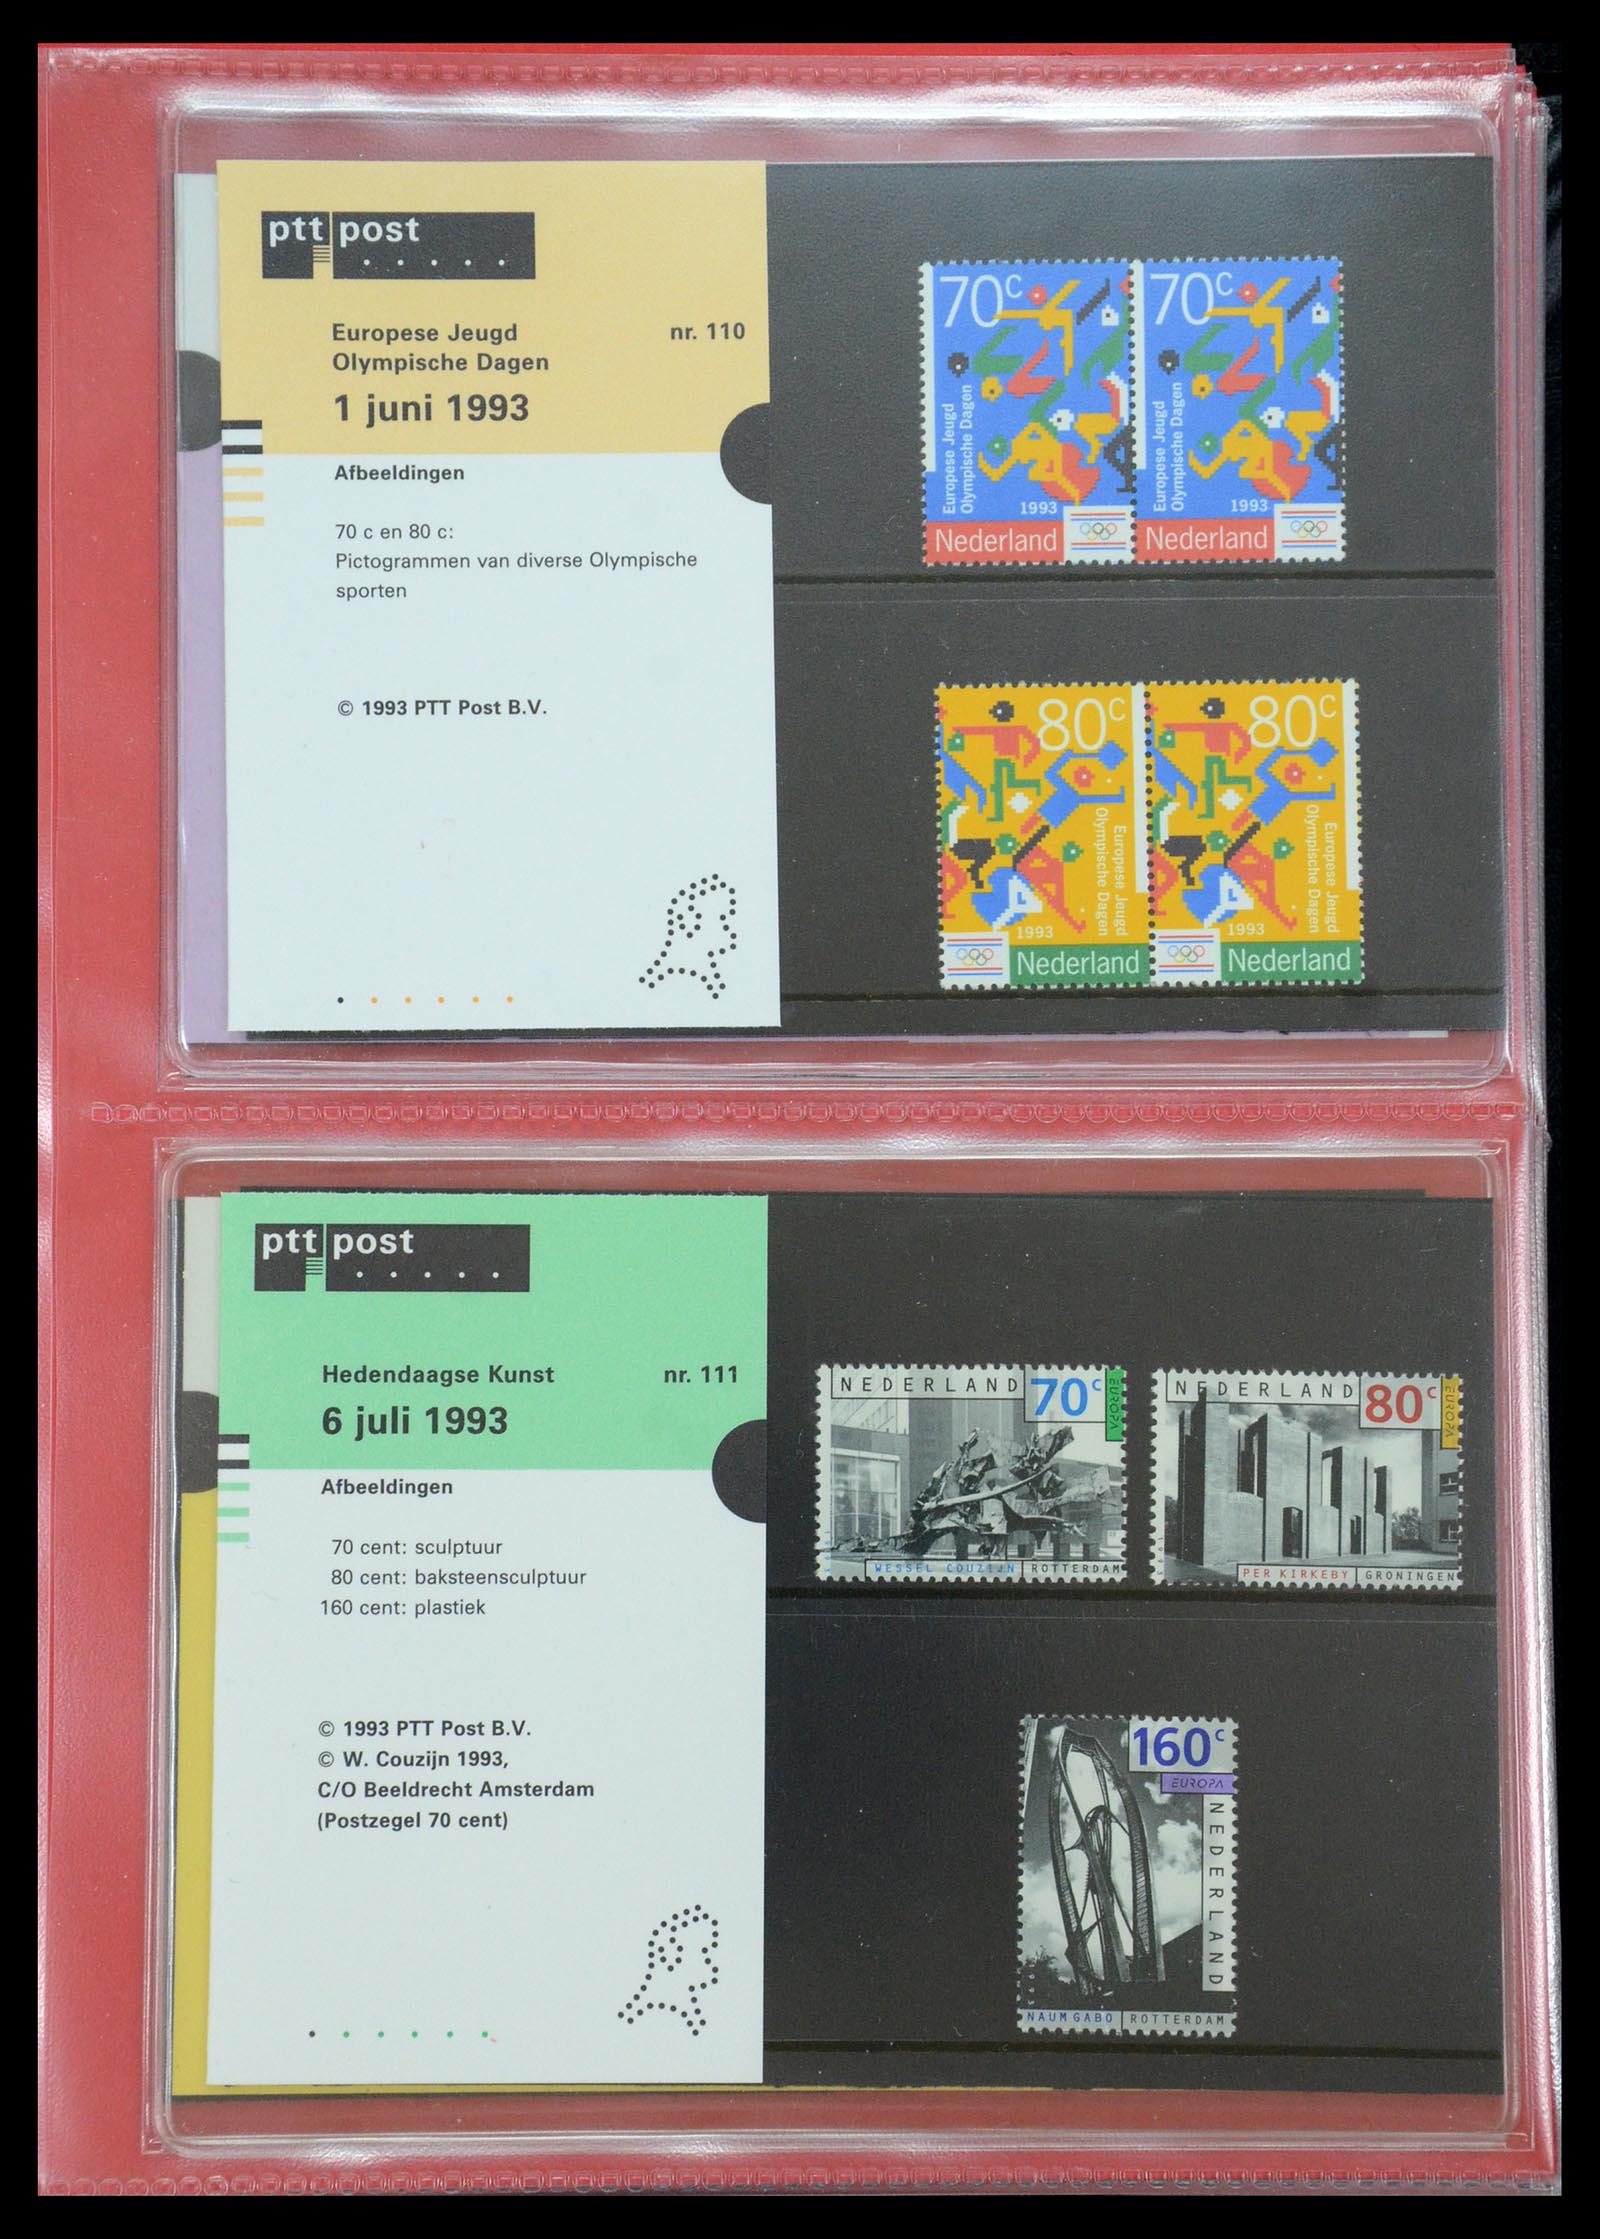 35692 057 - Stamp Collection 35692 Netherlands presentation packs 1982-2021!!